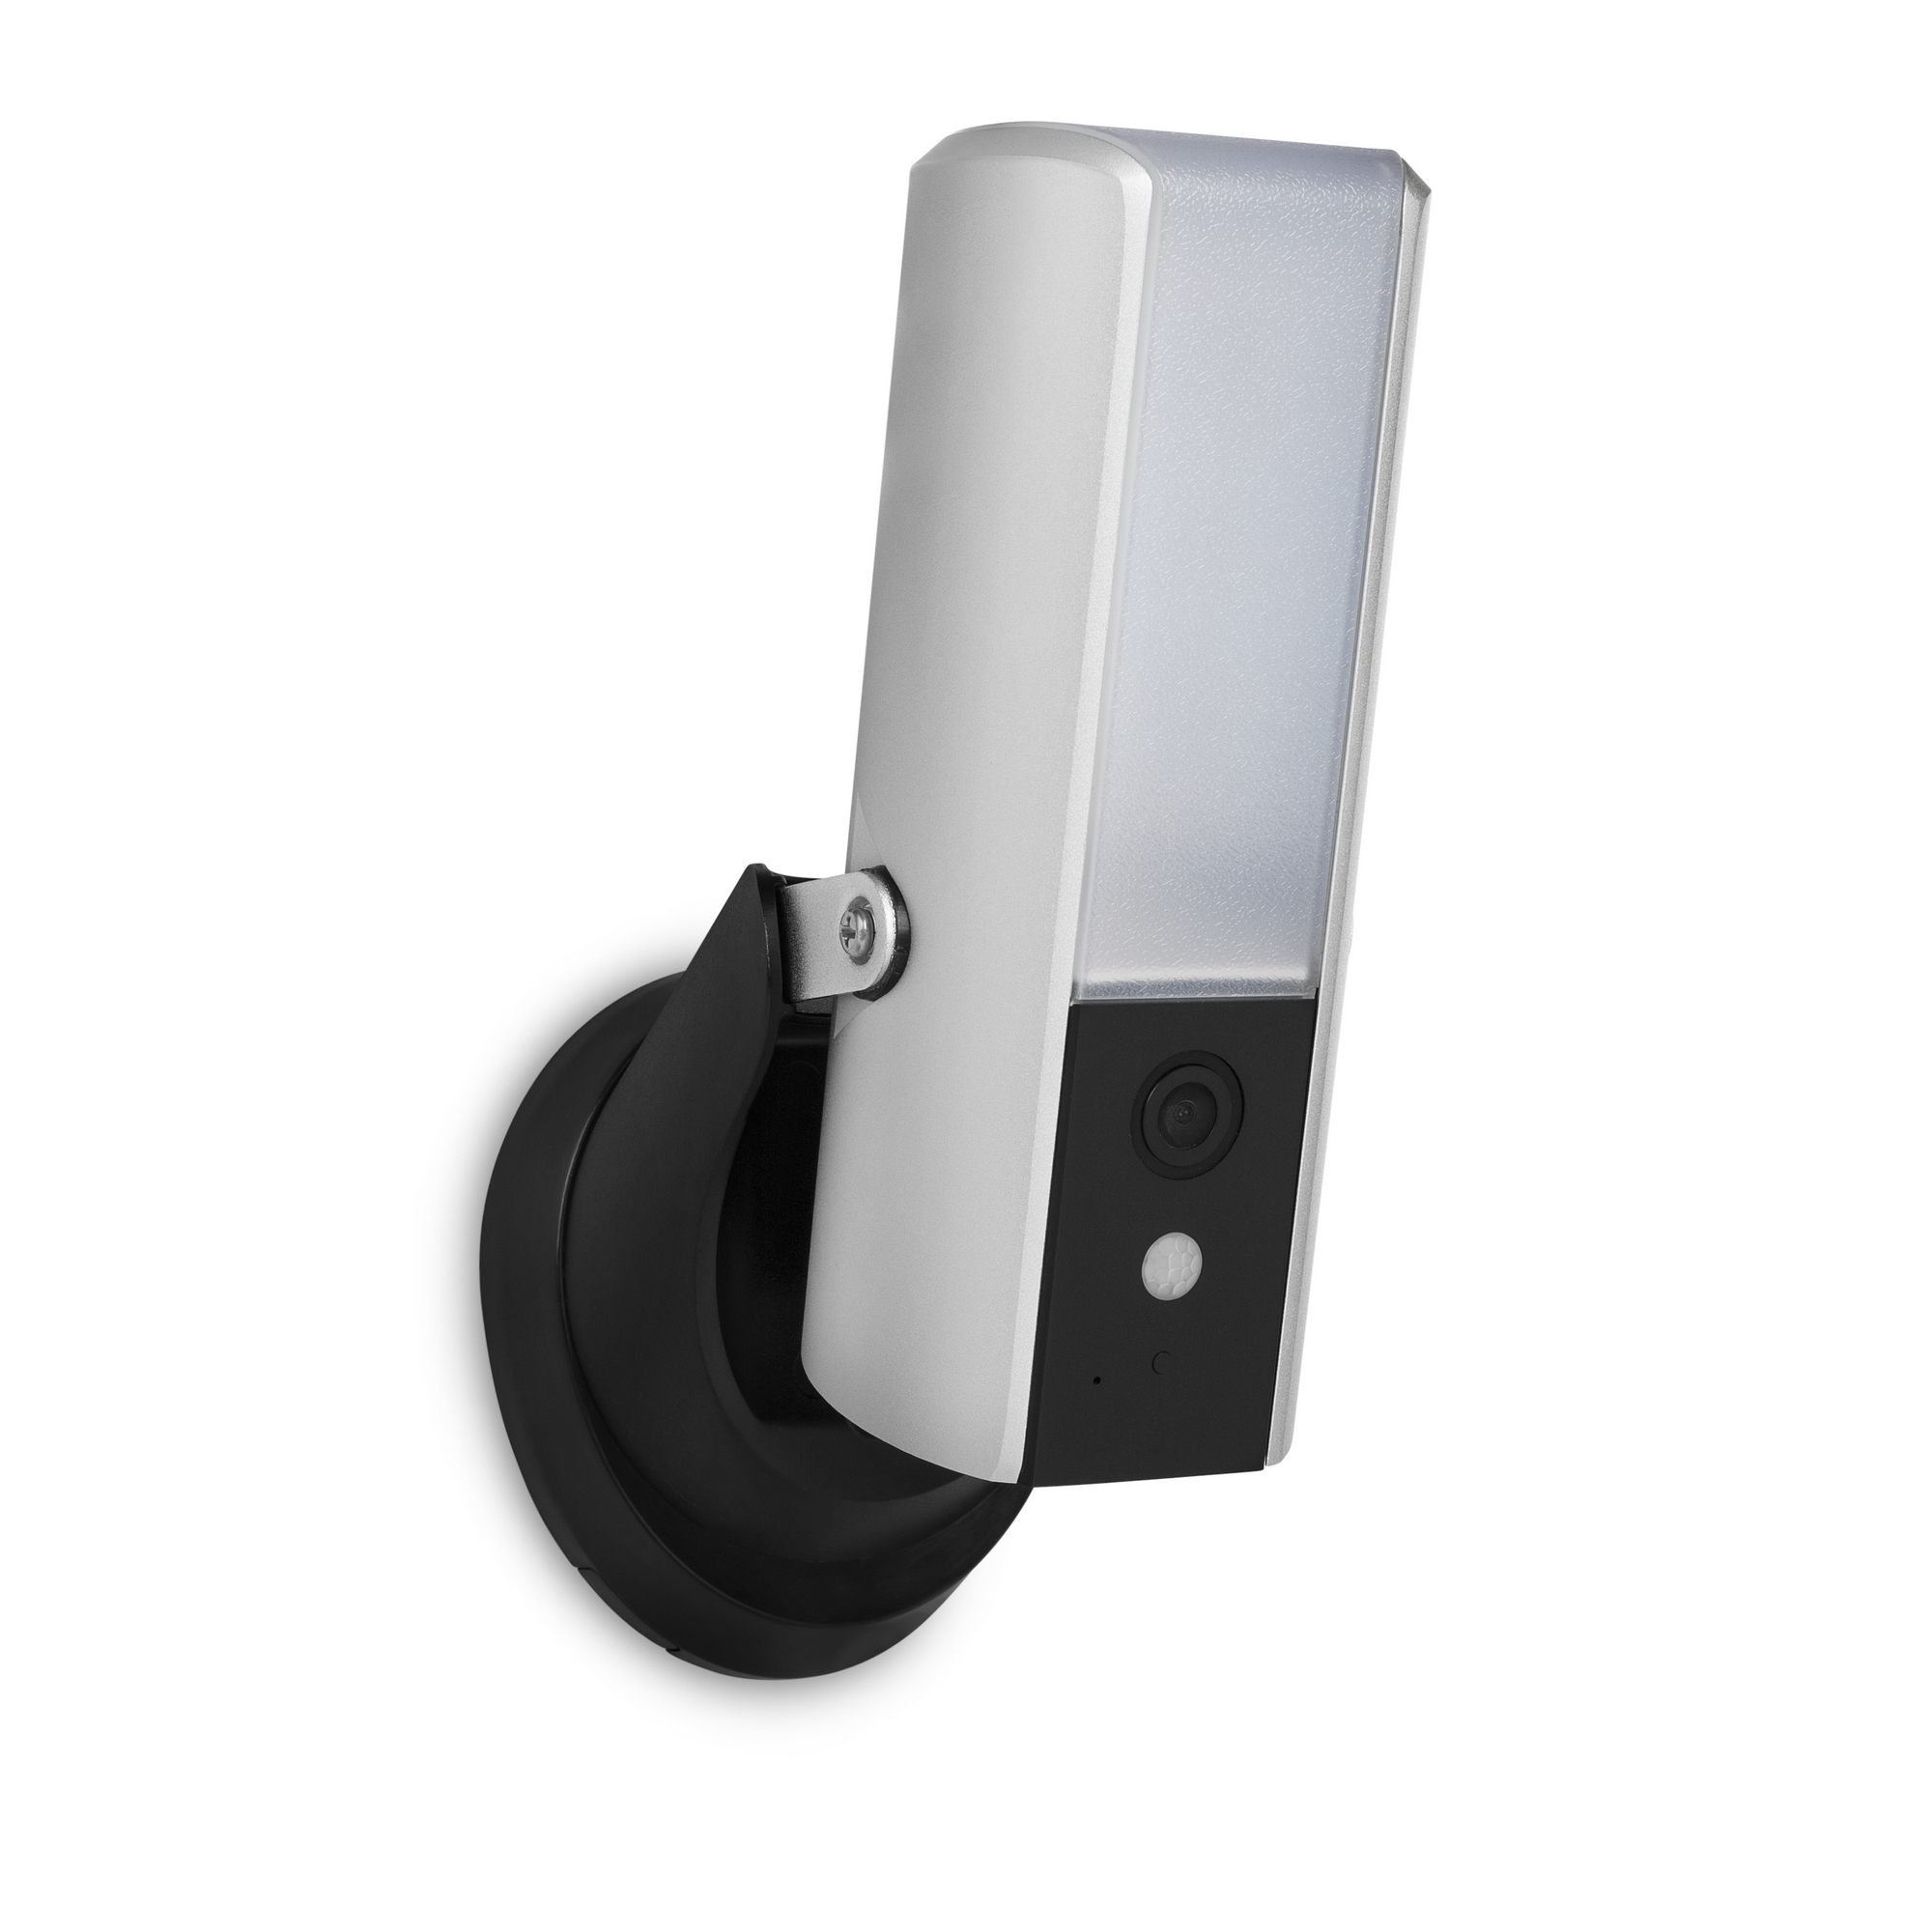 Überwachungskamera 'CIP-39901' mit Bewegungsmelder silbern + product picture